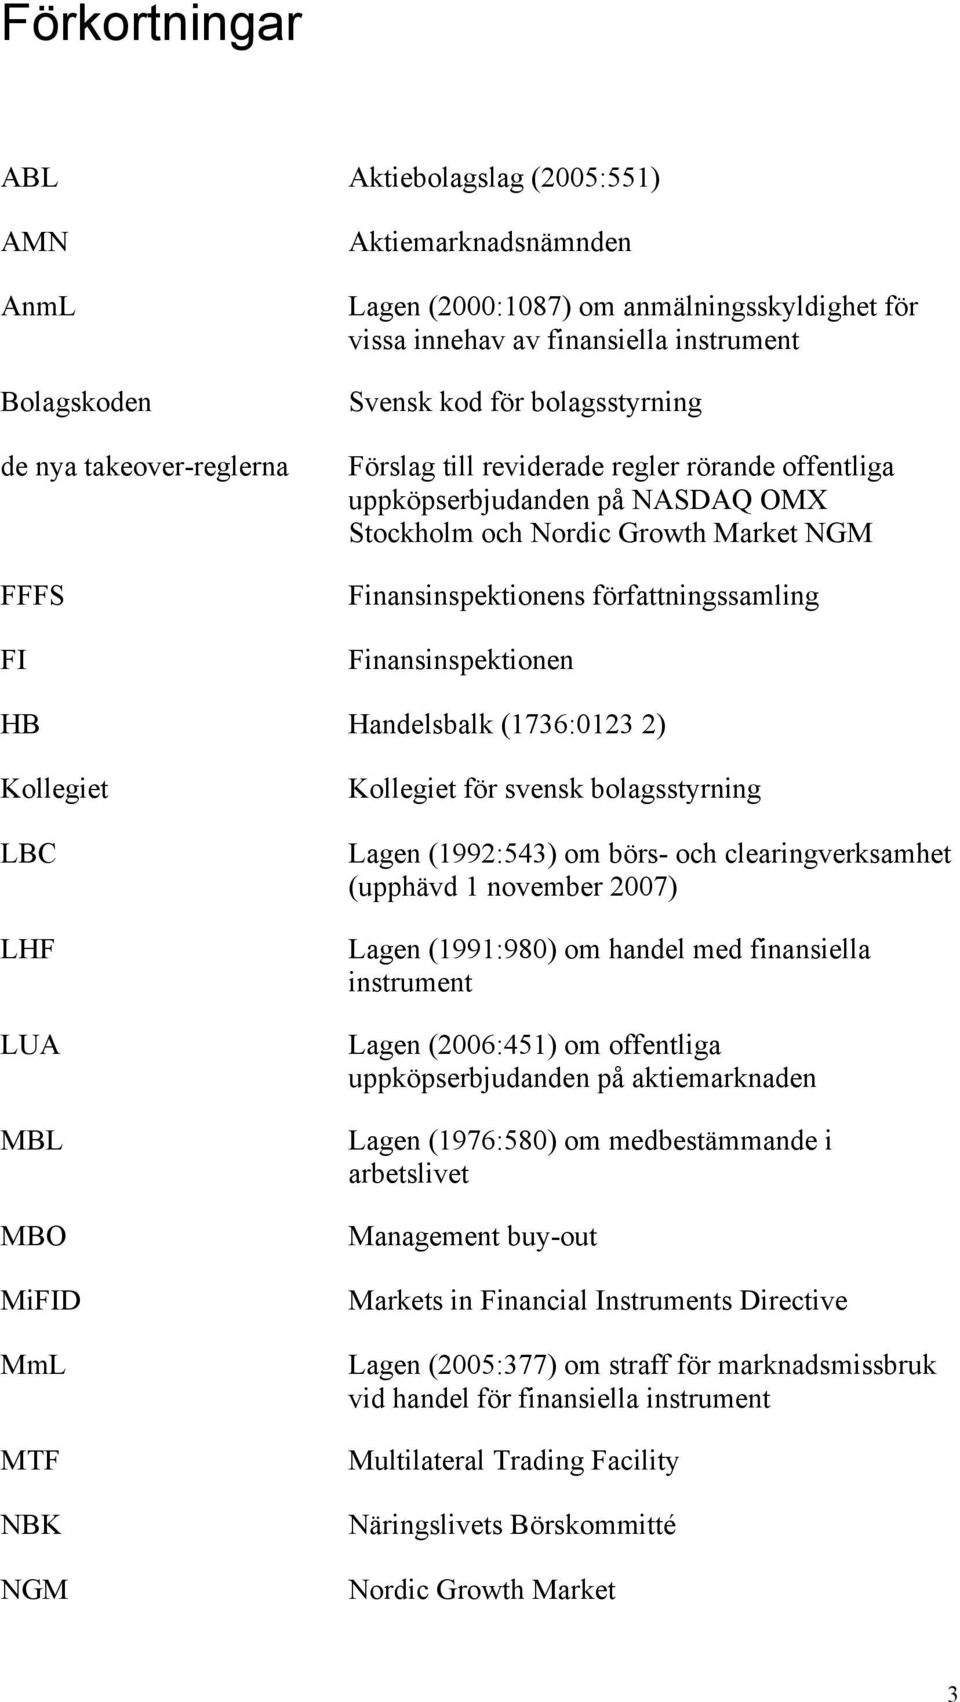 författningssamling Finansinspektionen HB Handelsbalk (1736:0123 2) Kollegiet LBC LHF LUA MBL MBO MiFID MmL MTF NBK NGM Kollegiet för svensk bolagsstyrning Lagen (1992:543) om börs- och